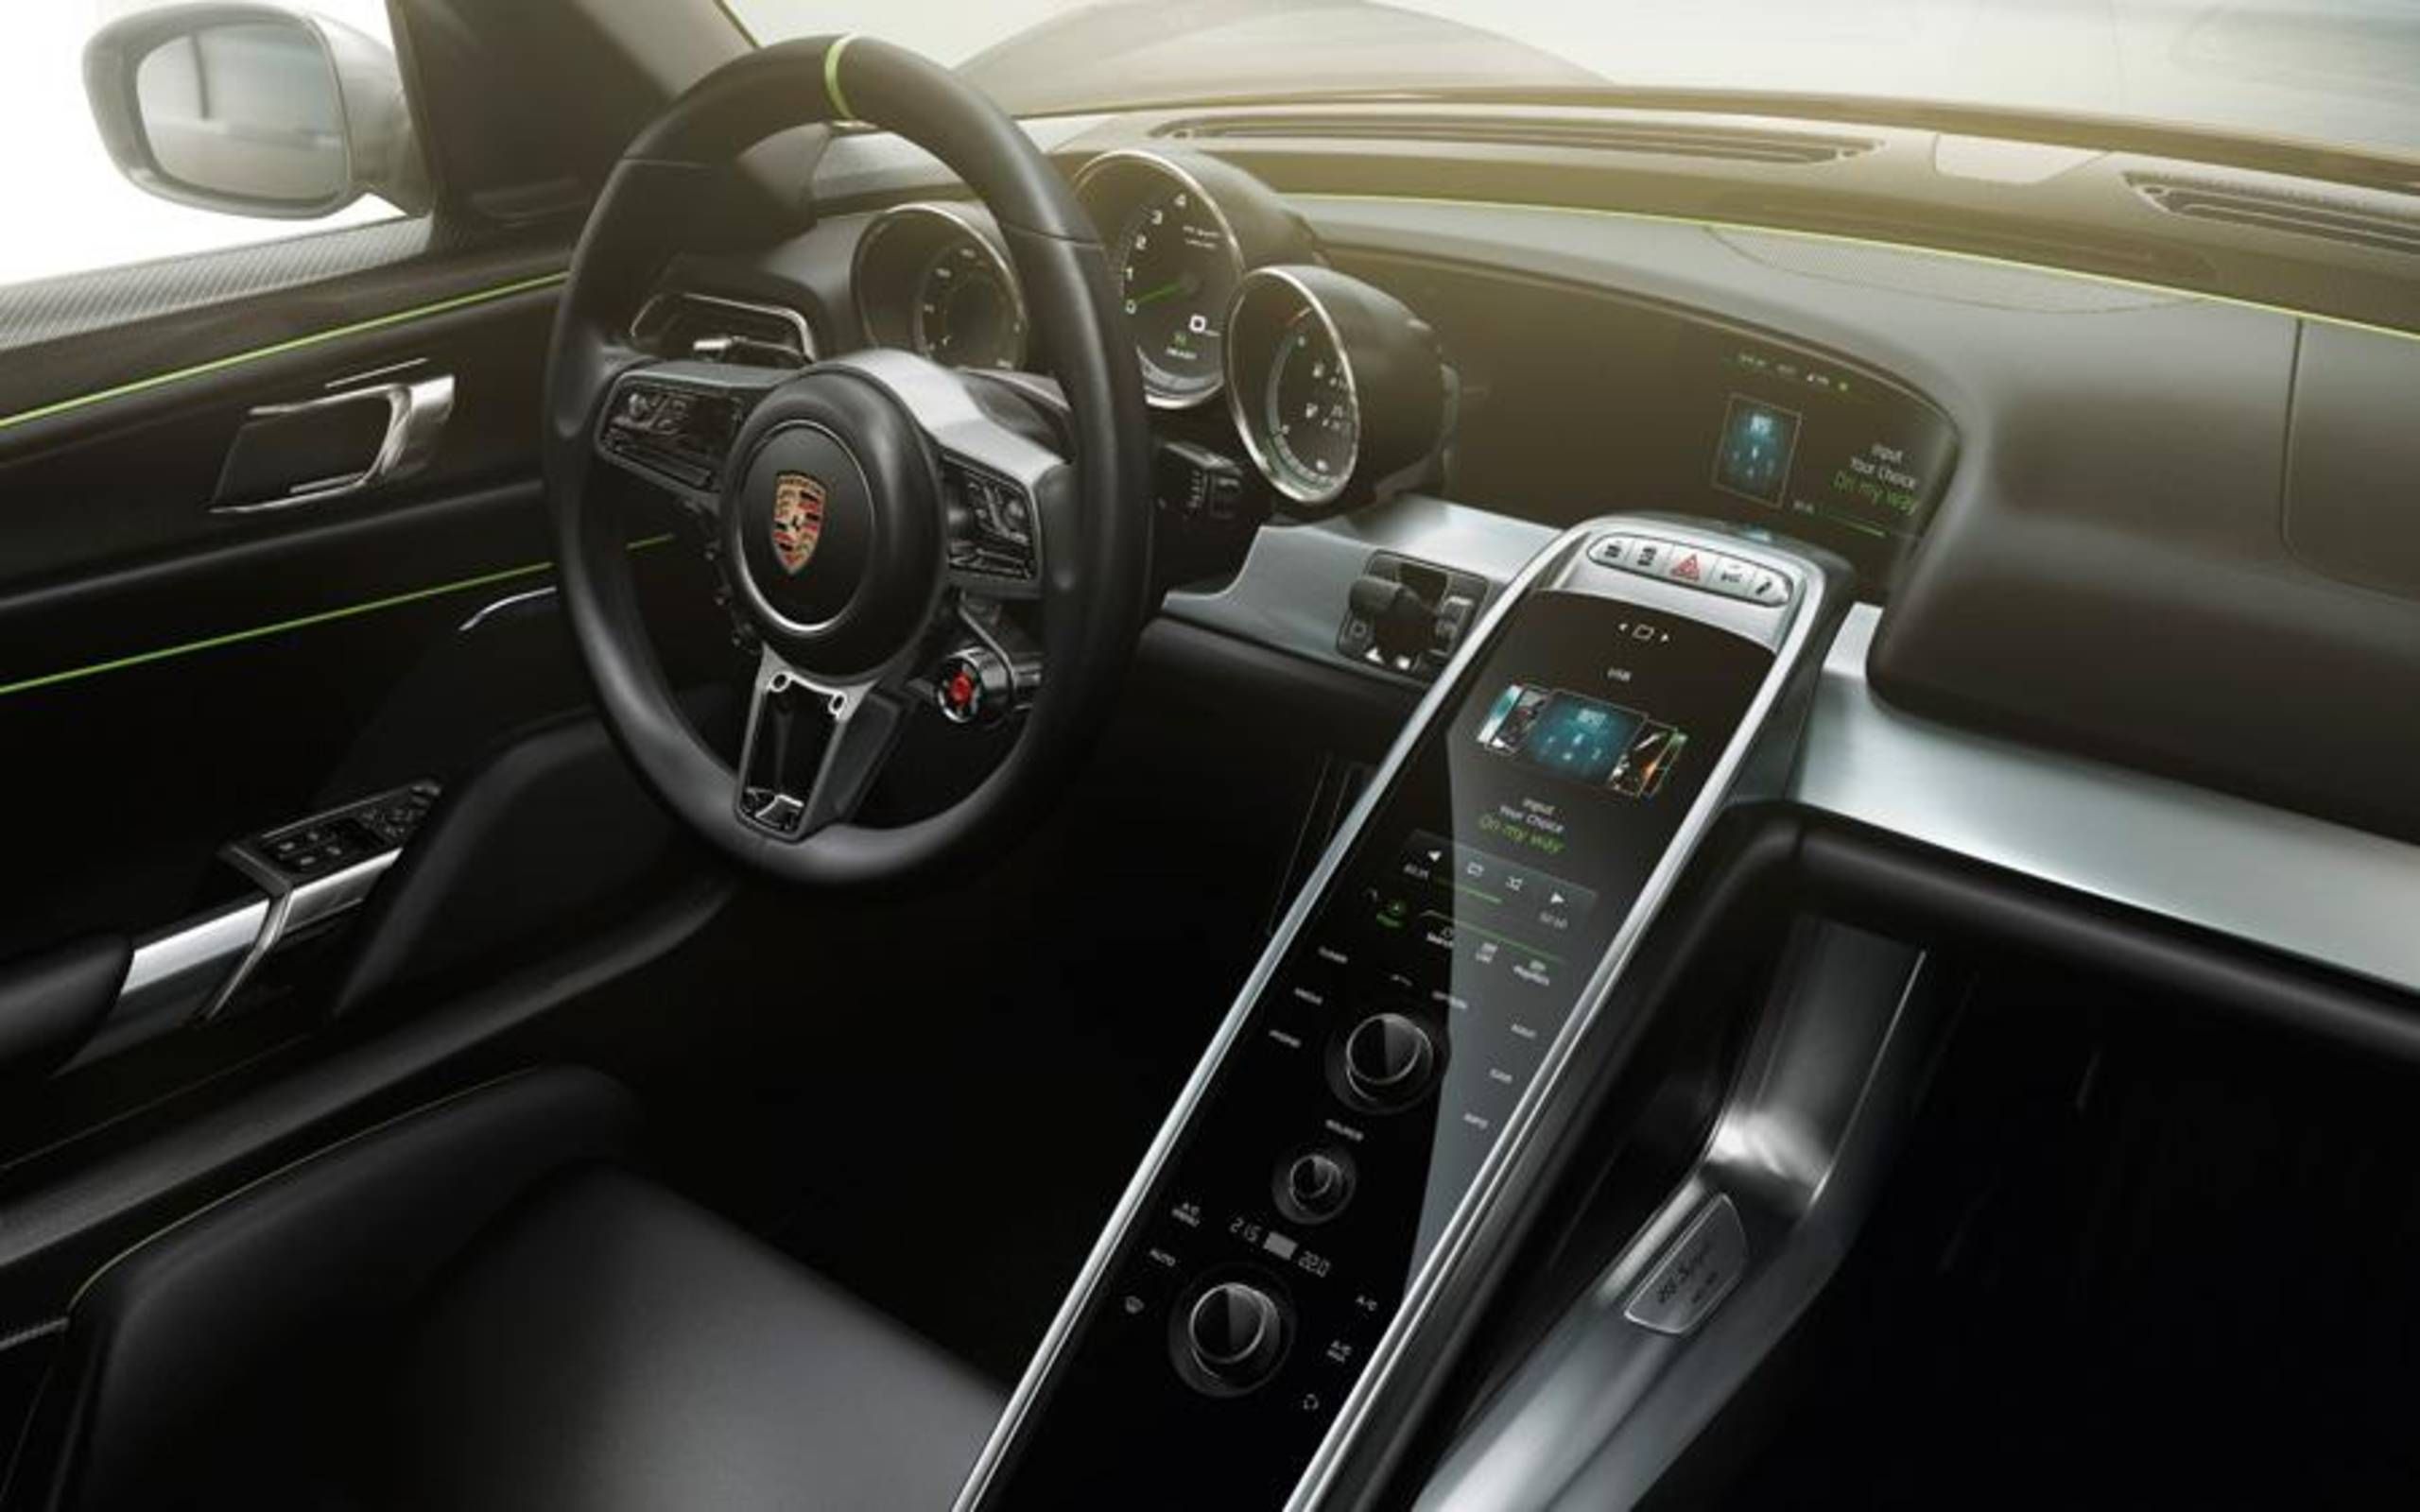 S1nn Explains The Porsche 918 Spyder Infotainment System